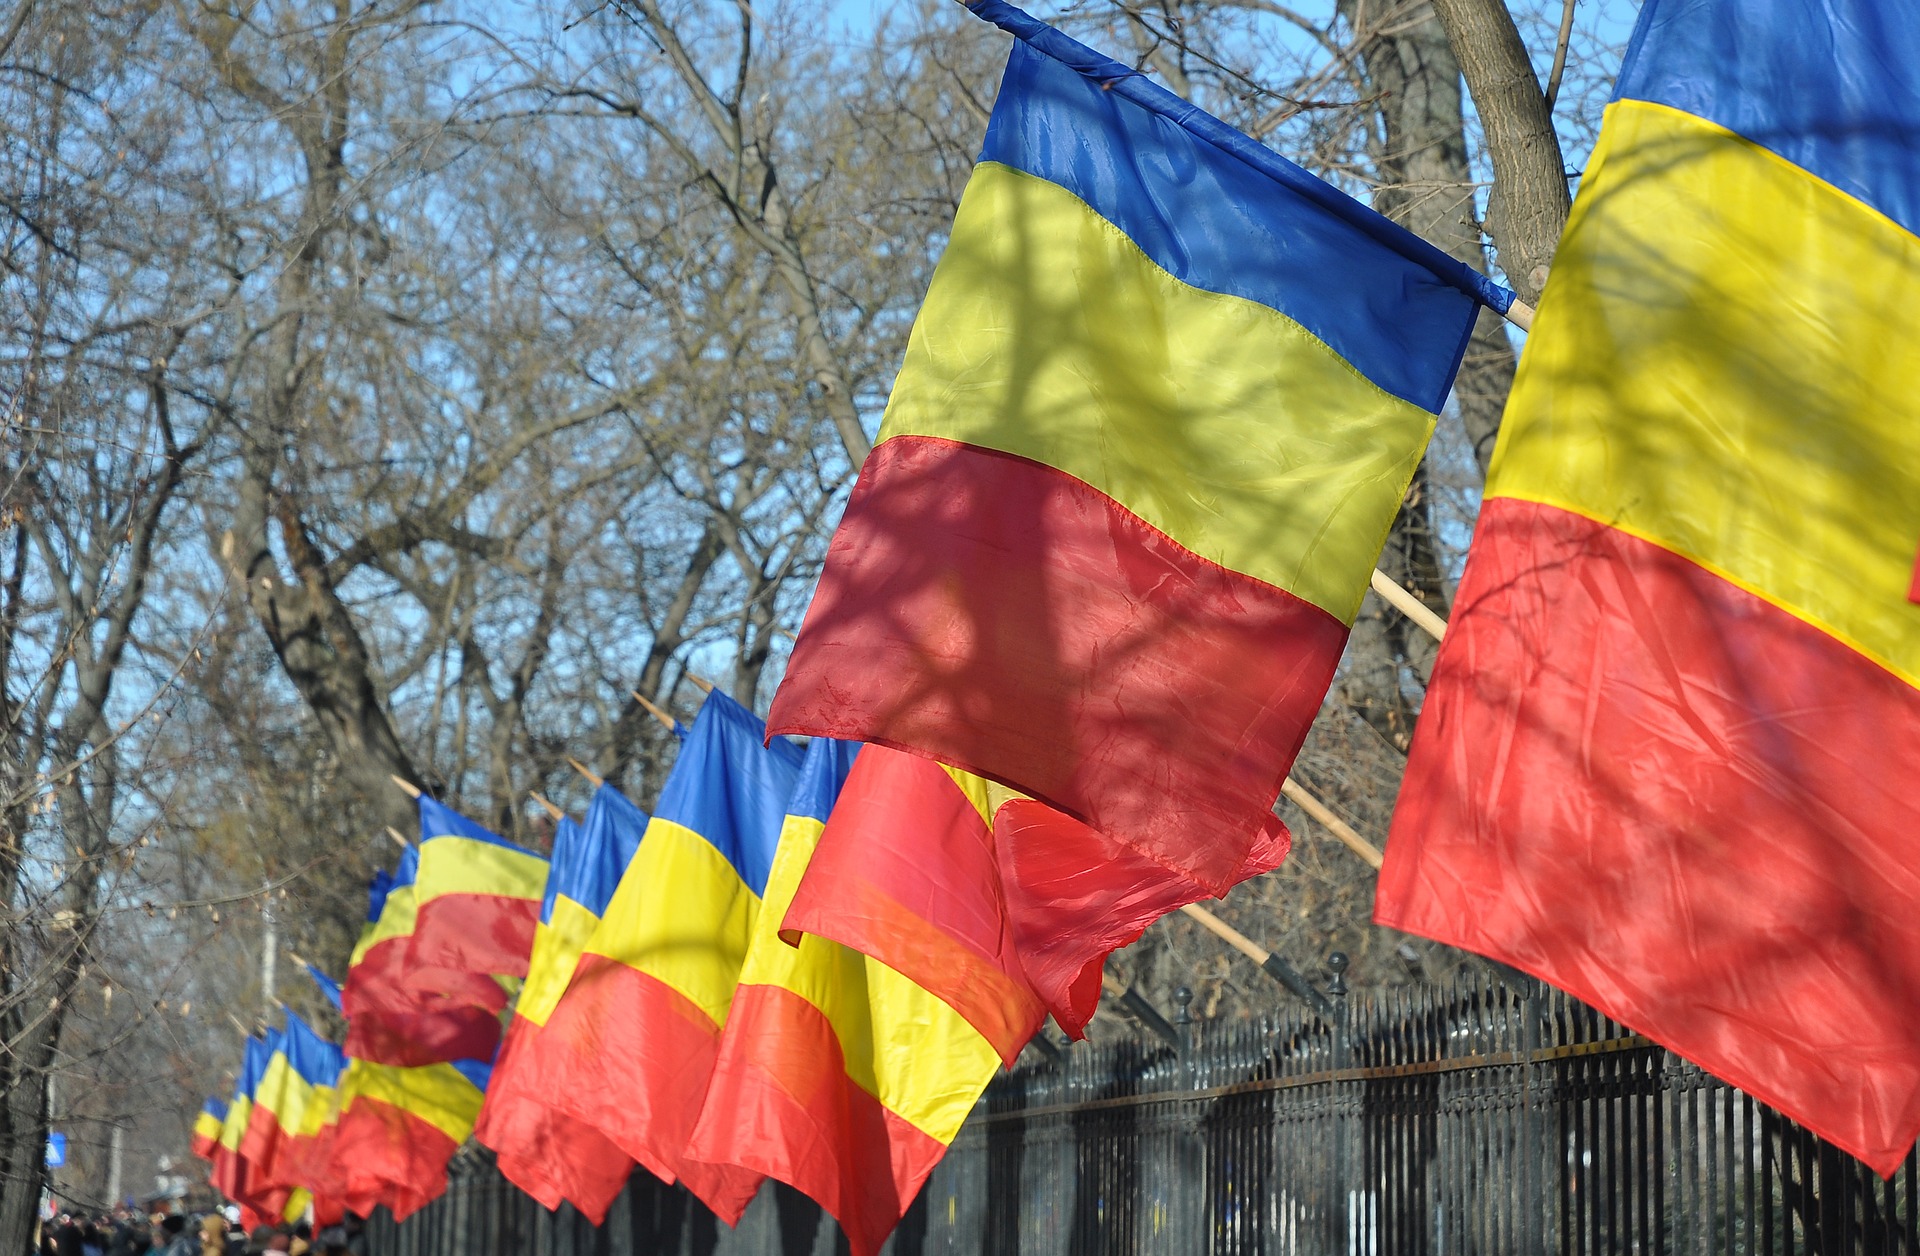 Ünnep lenne Románia függetlenségének napja